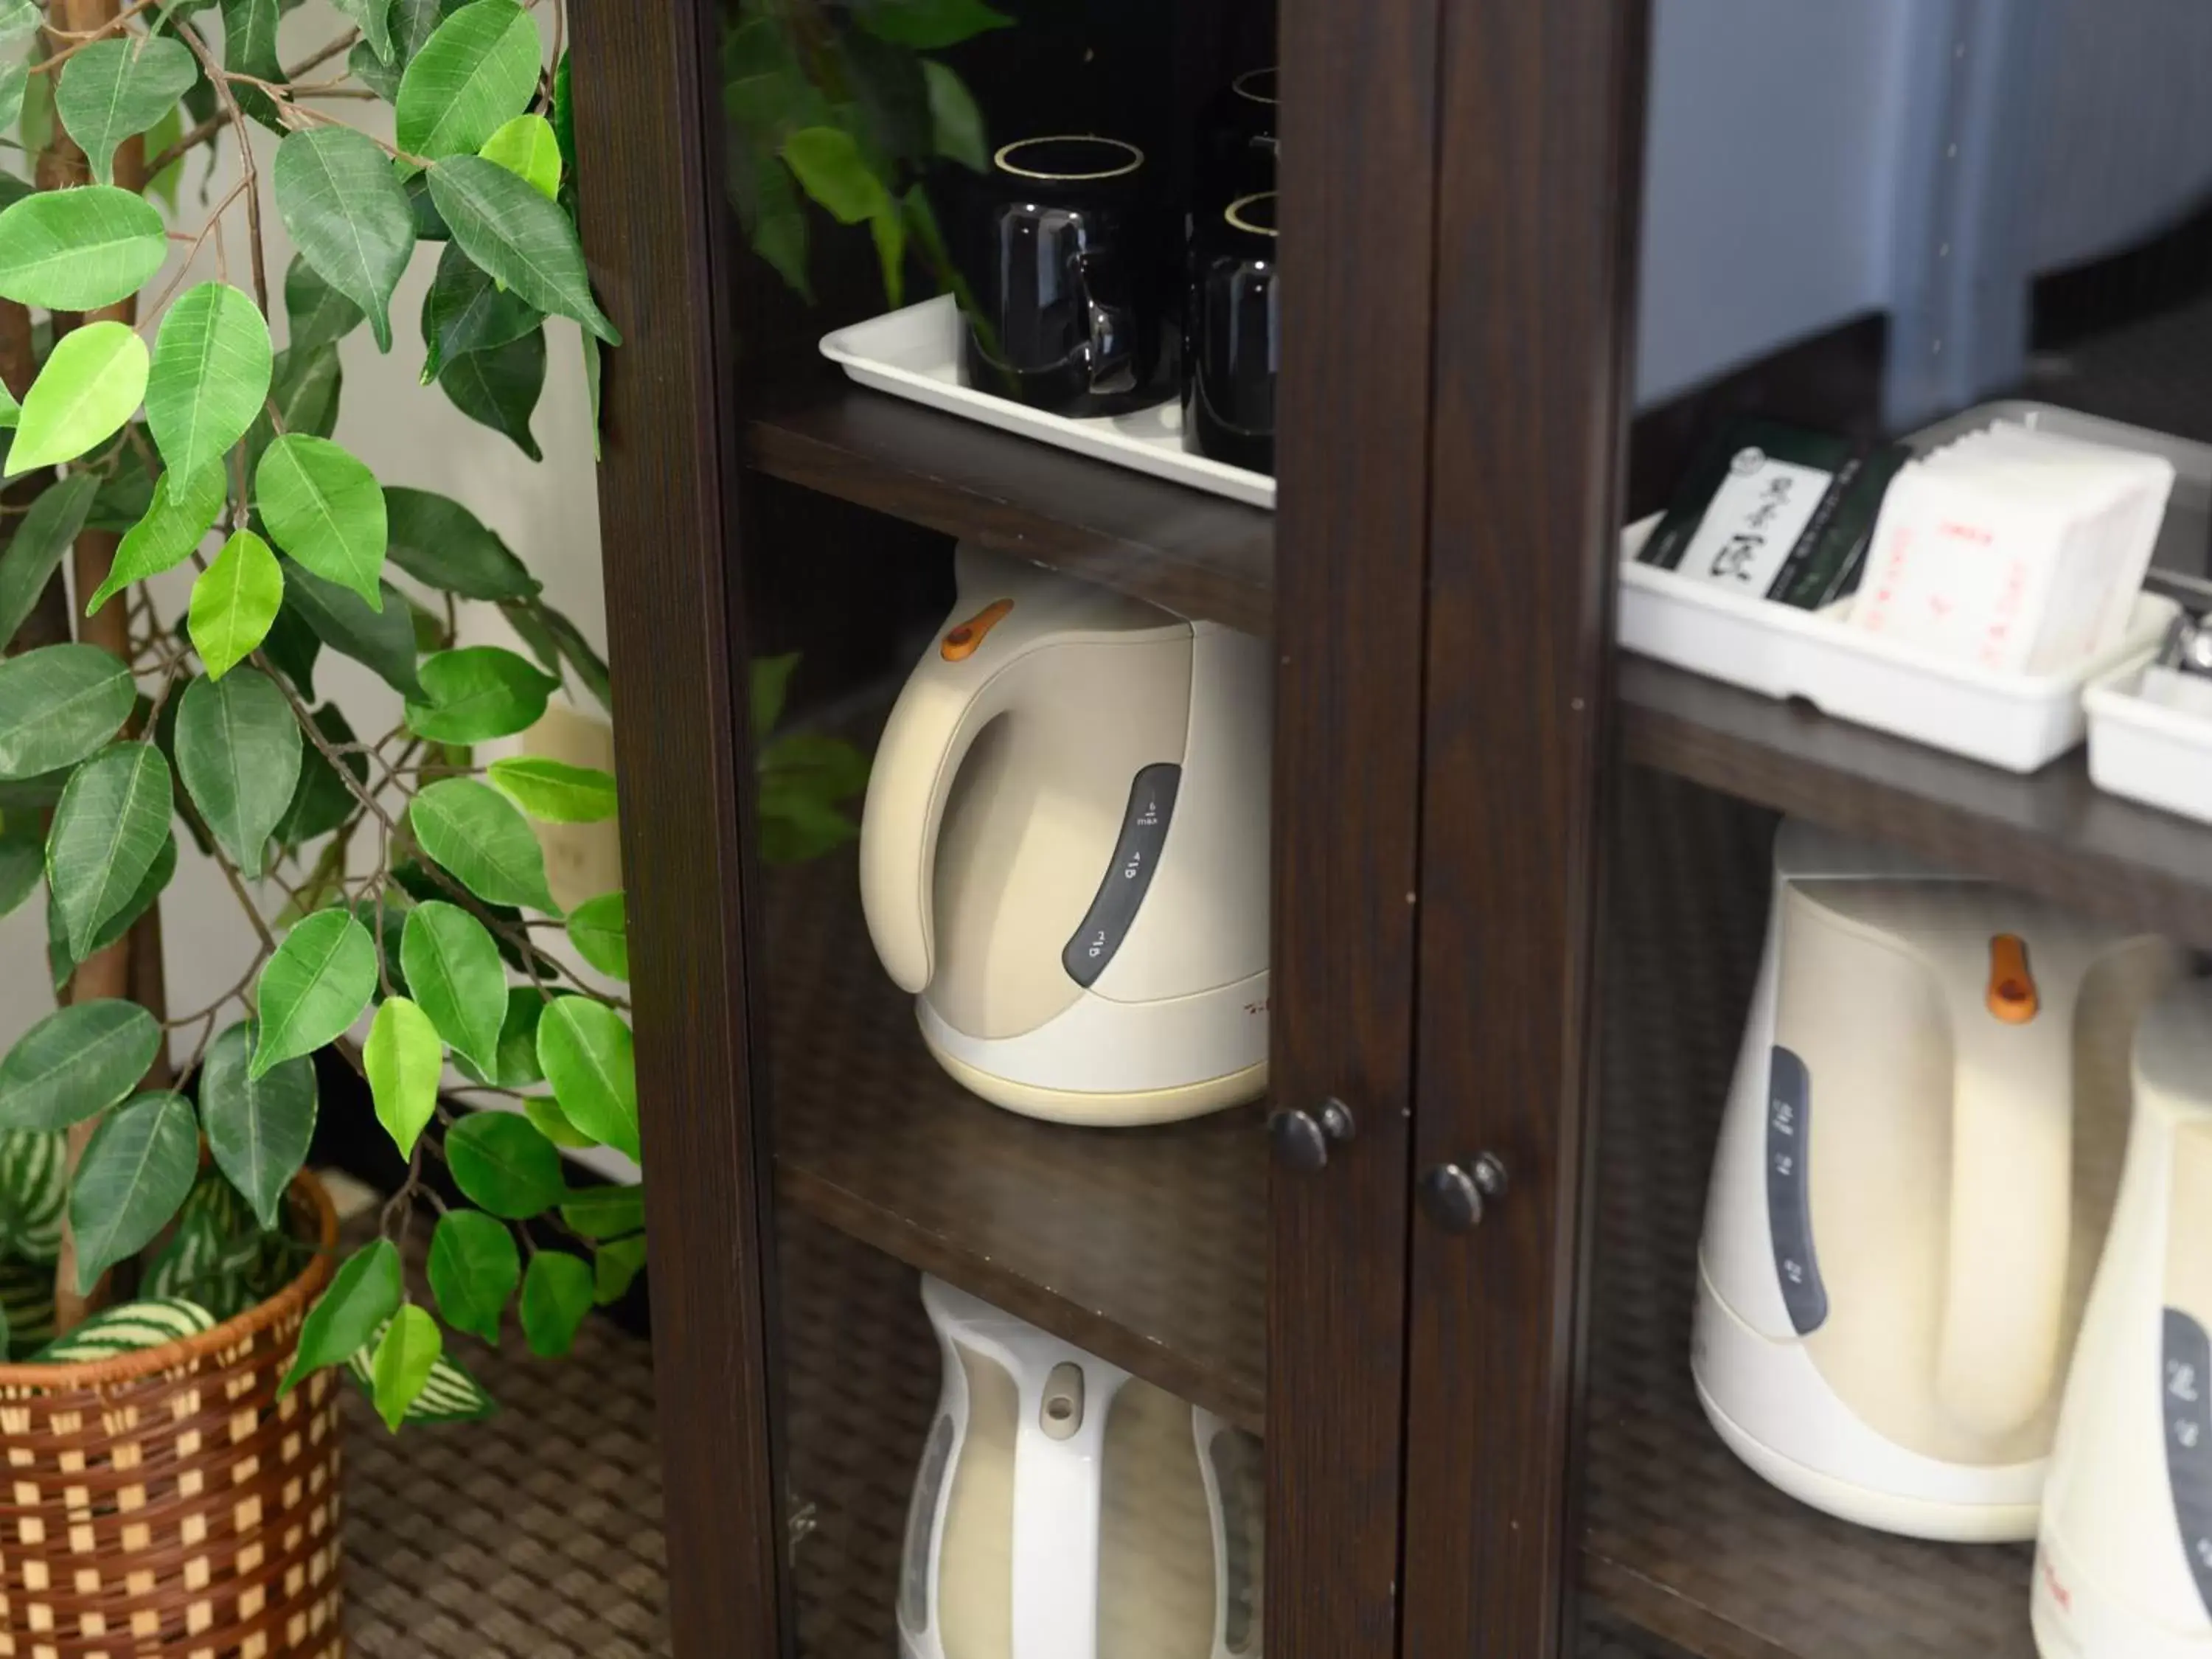 Coffee/tea facilities, Bathroom in Tabist IWATA Station Hotel